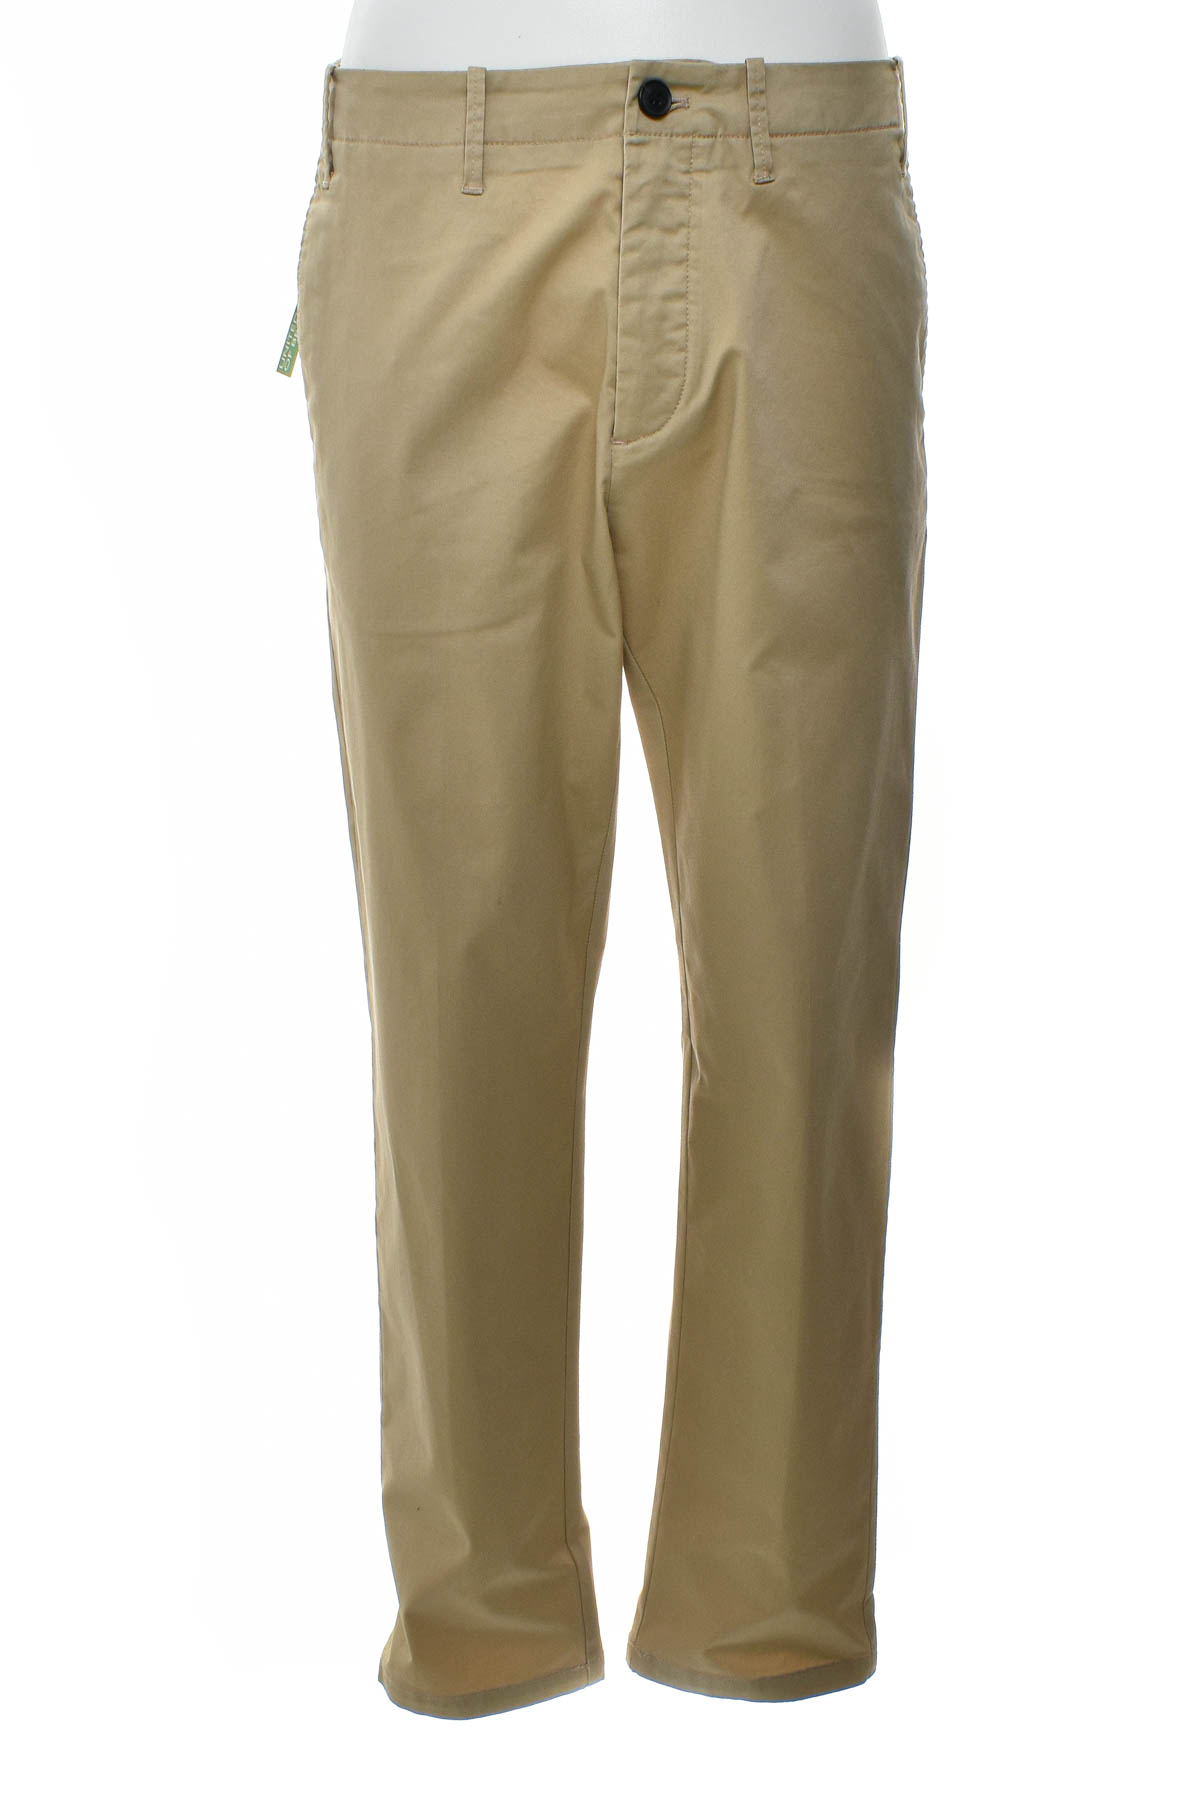 Pantalon pentru bărbați - United Colors of Benetton - 0